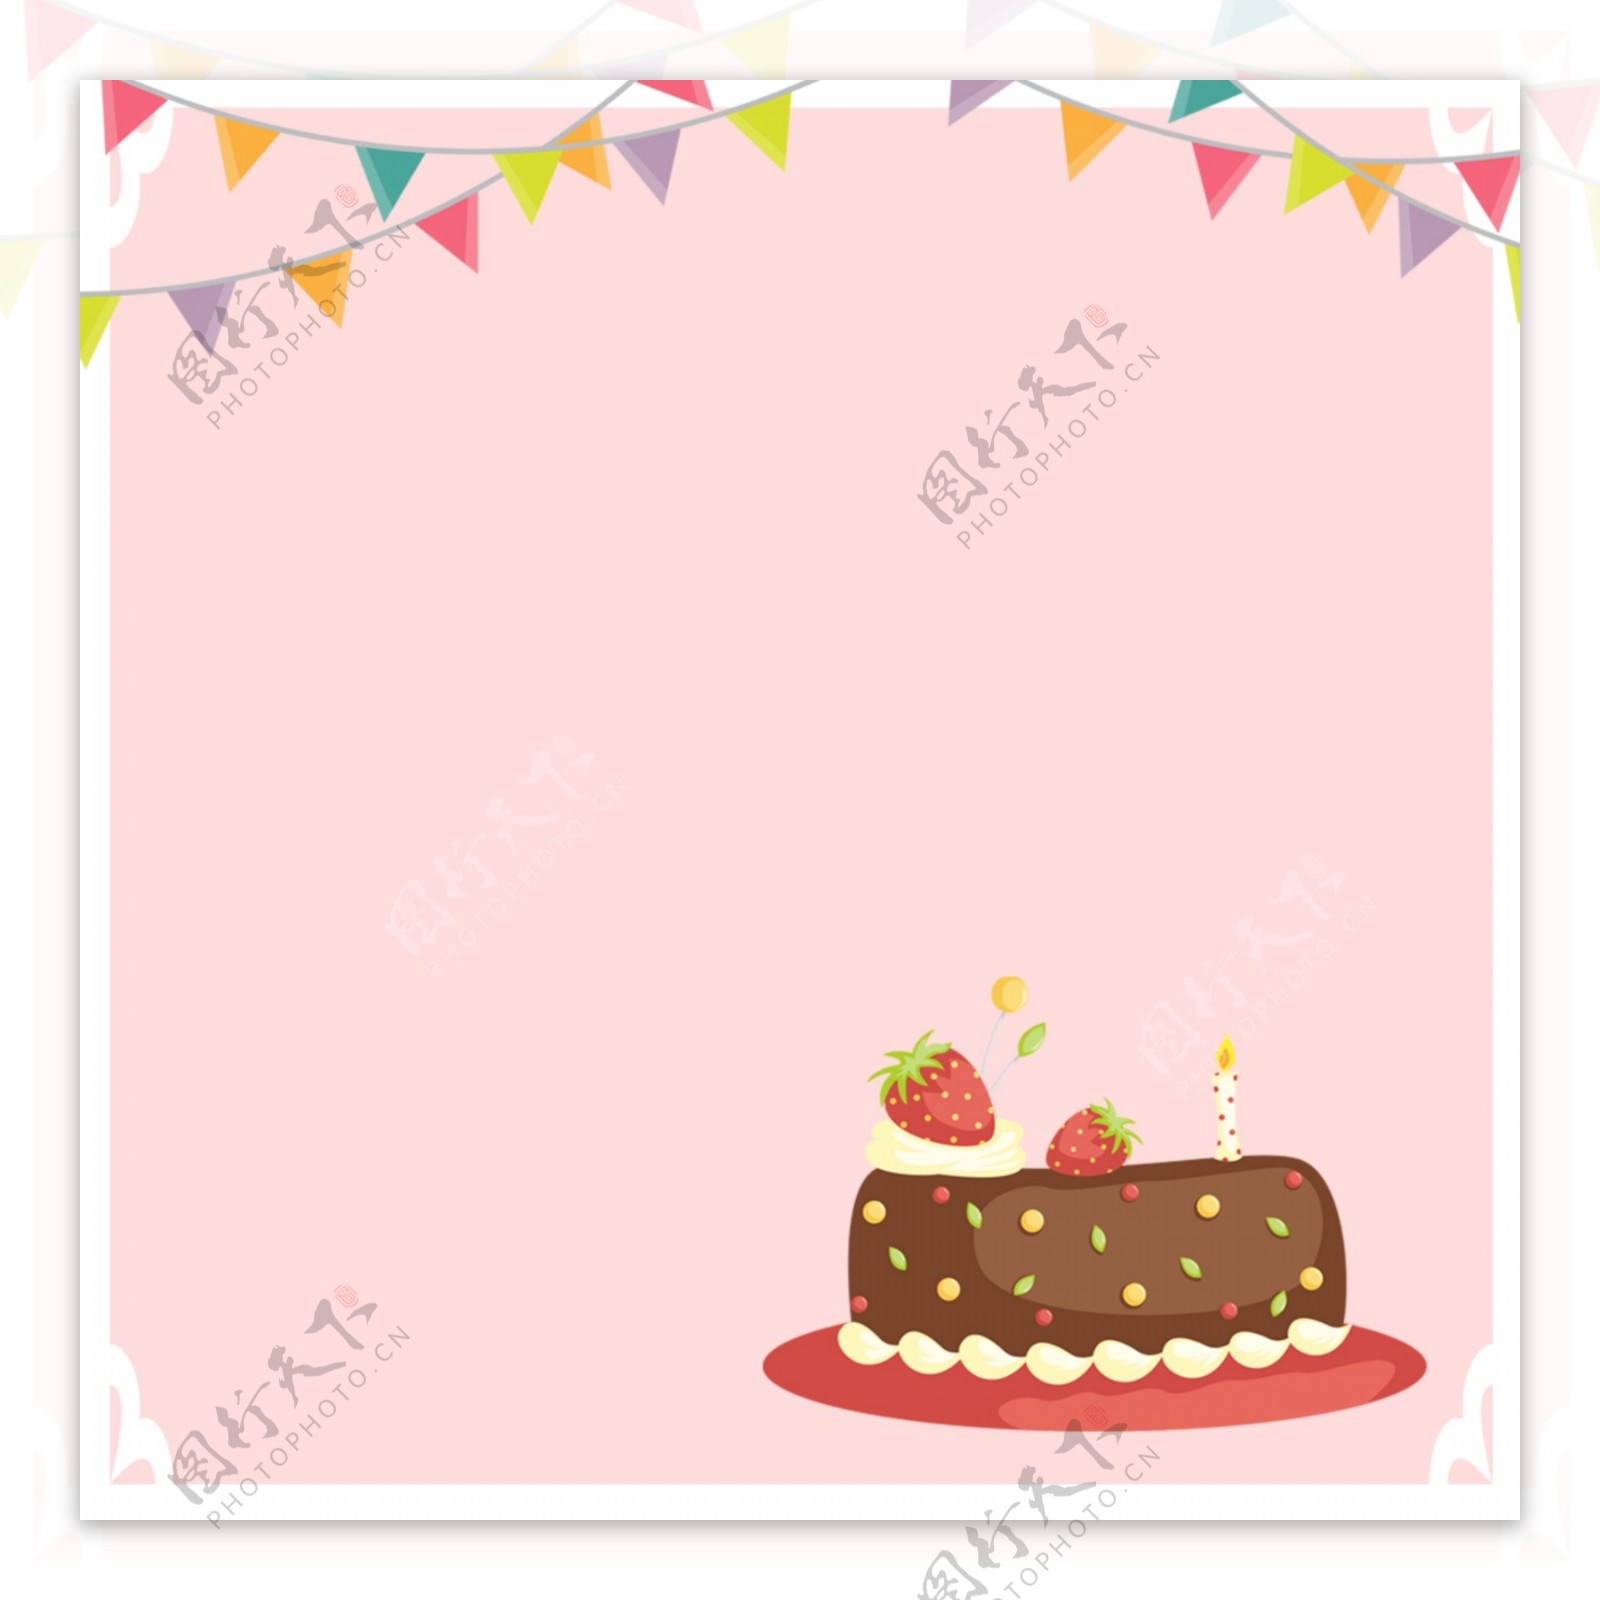 唯美可爱生日蛋糕手绘背景